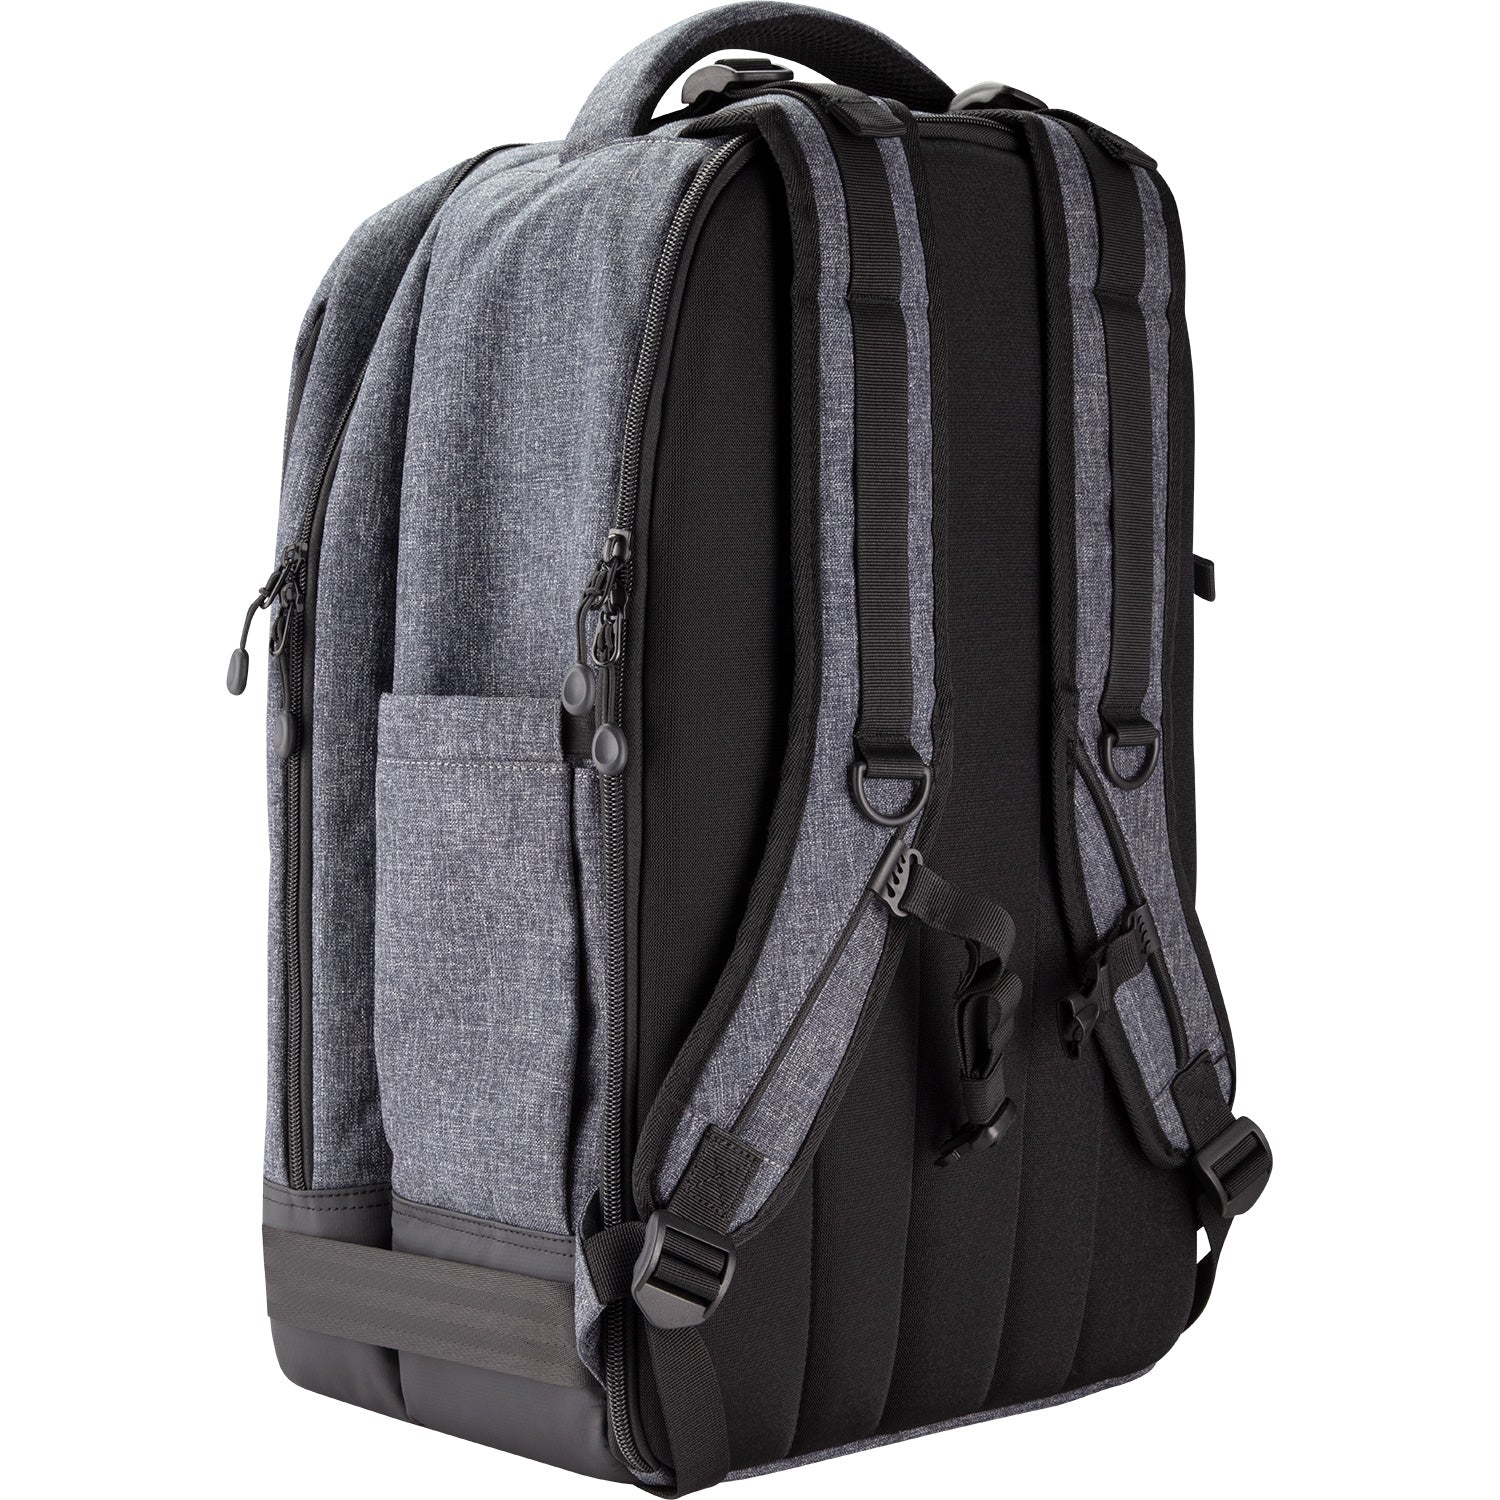 L60-B Bi-Color COB LED 2-Light Backpack Kit